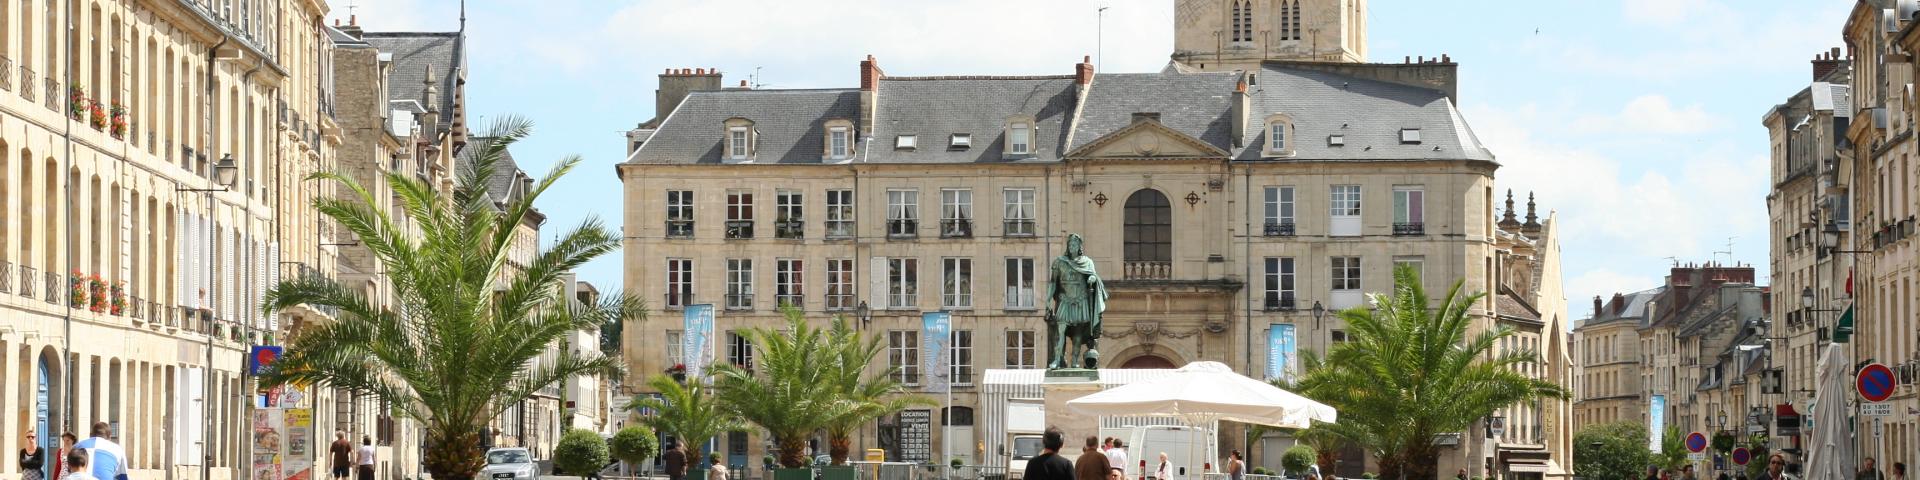 Place St Sauveur Caen